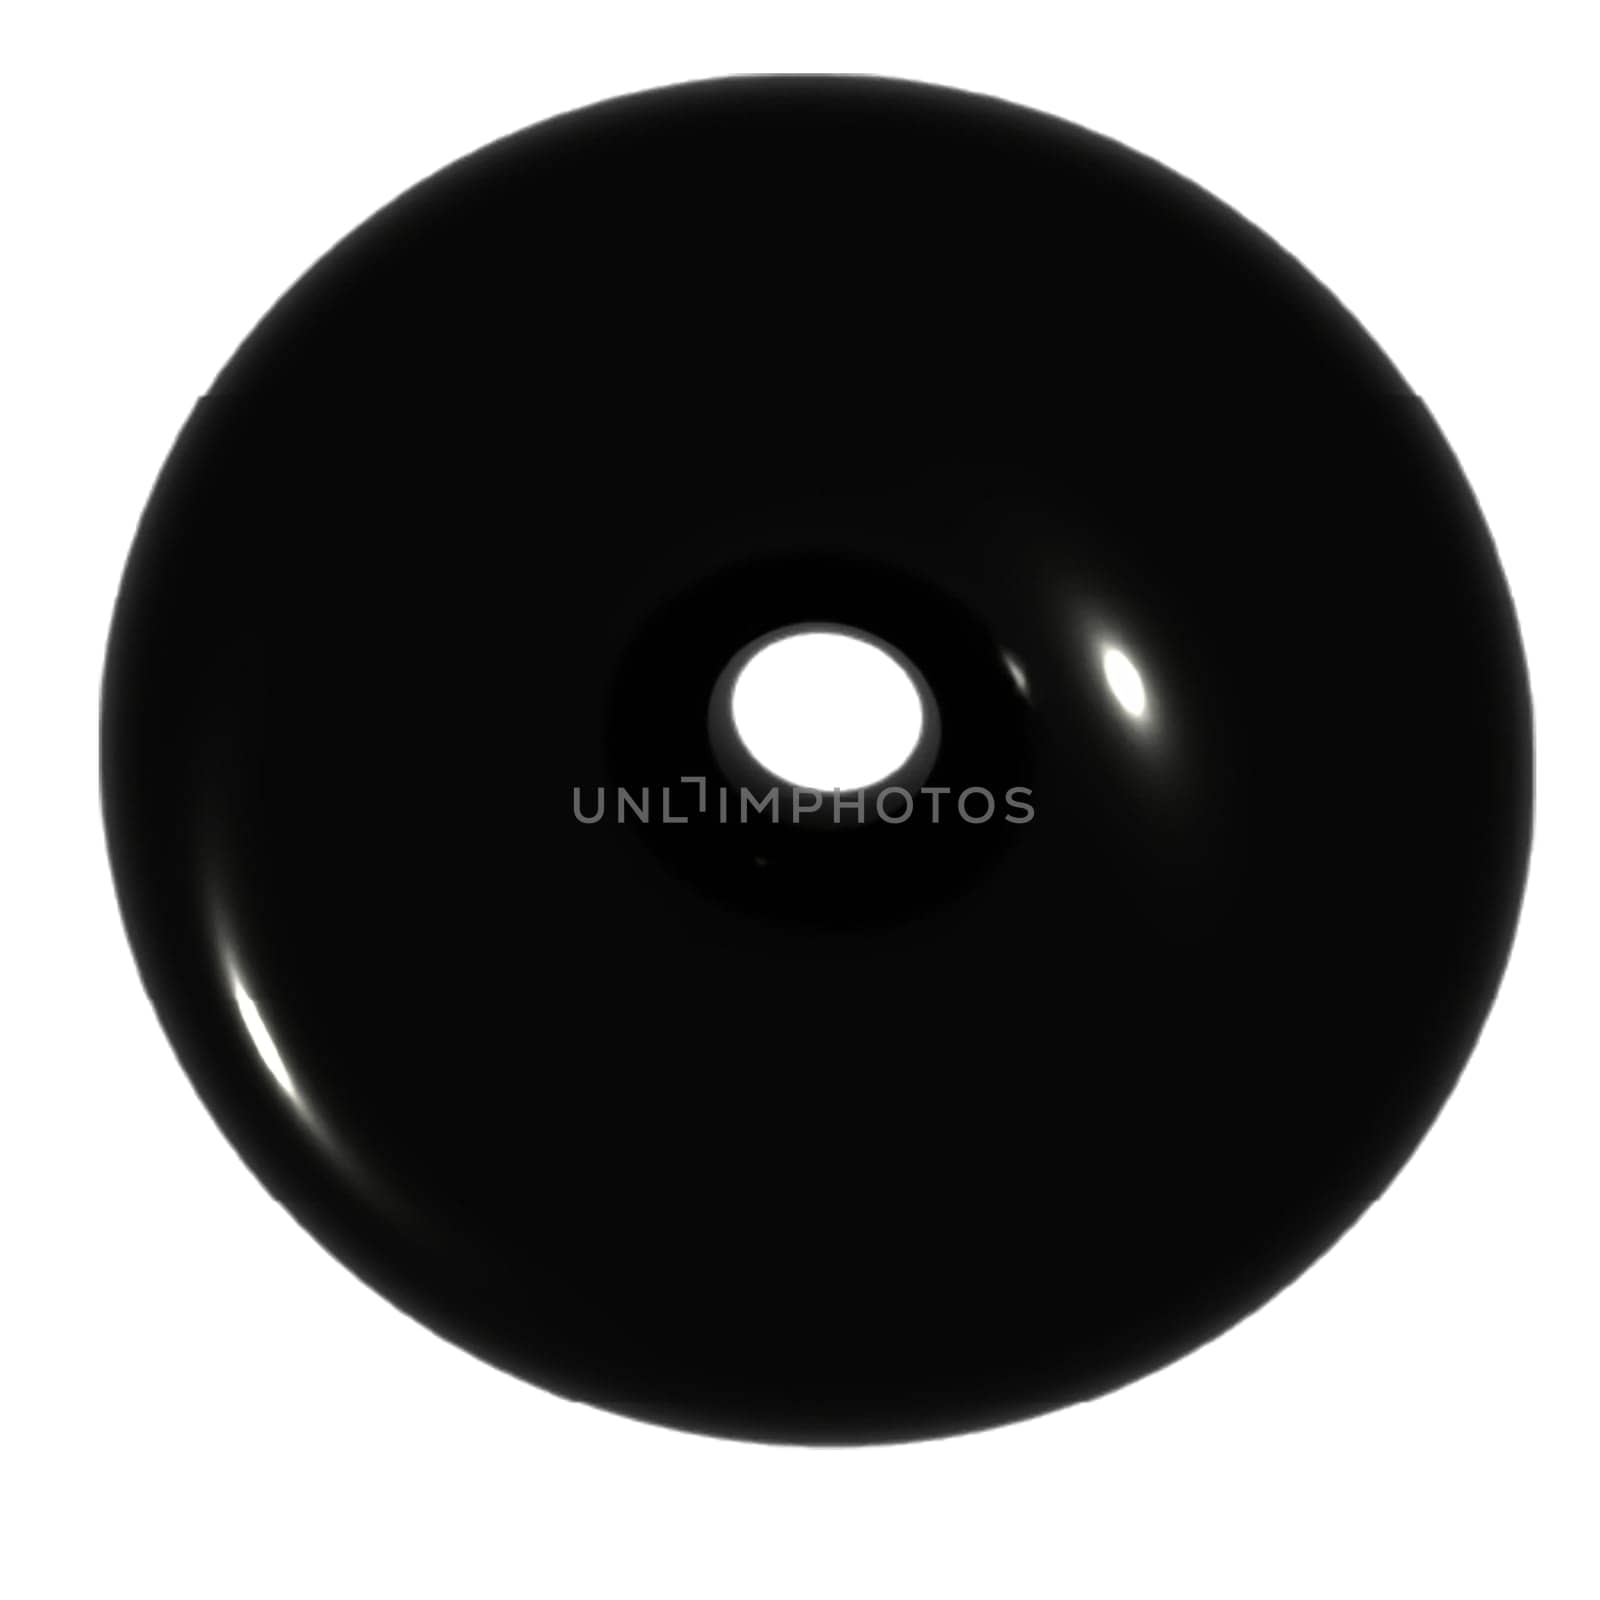 3D black oval geometrical shape by Dustick